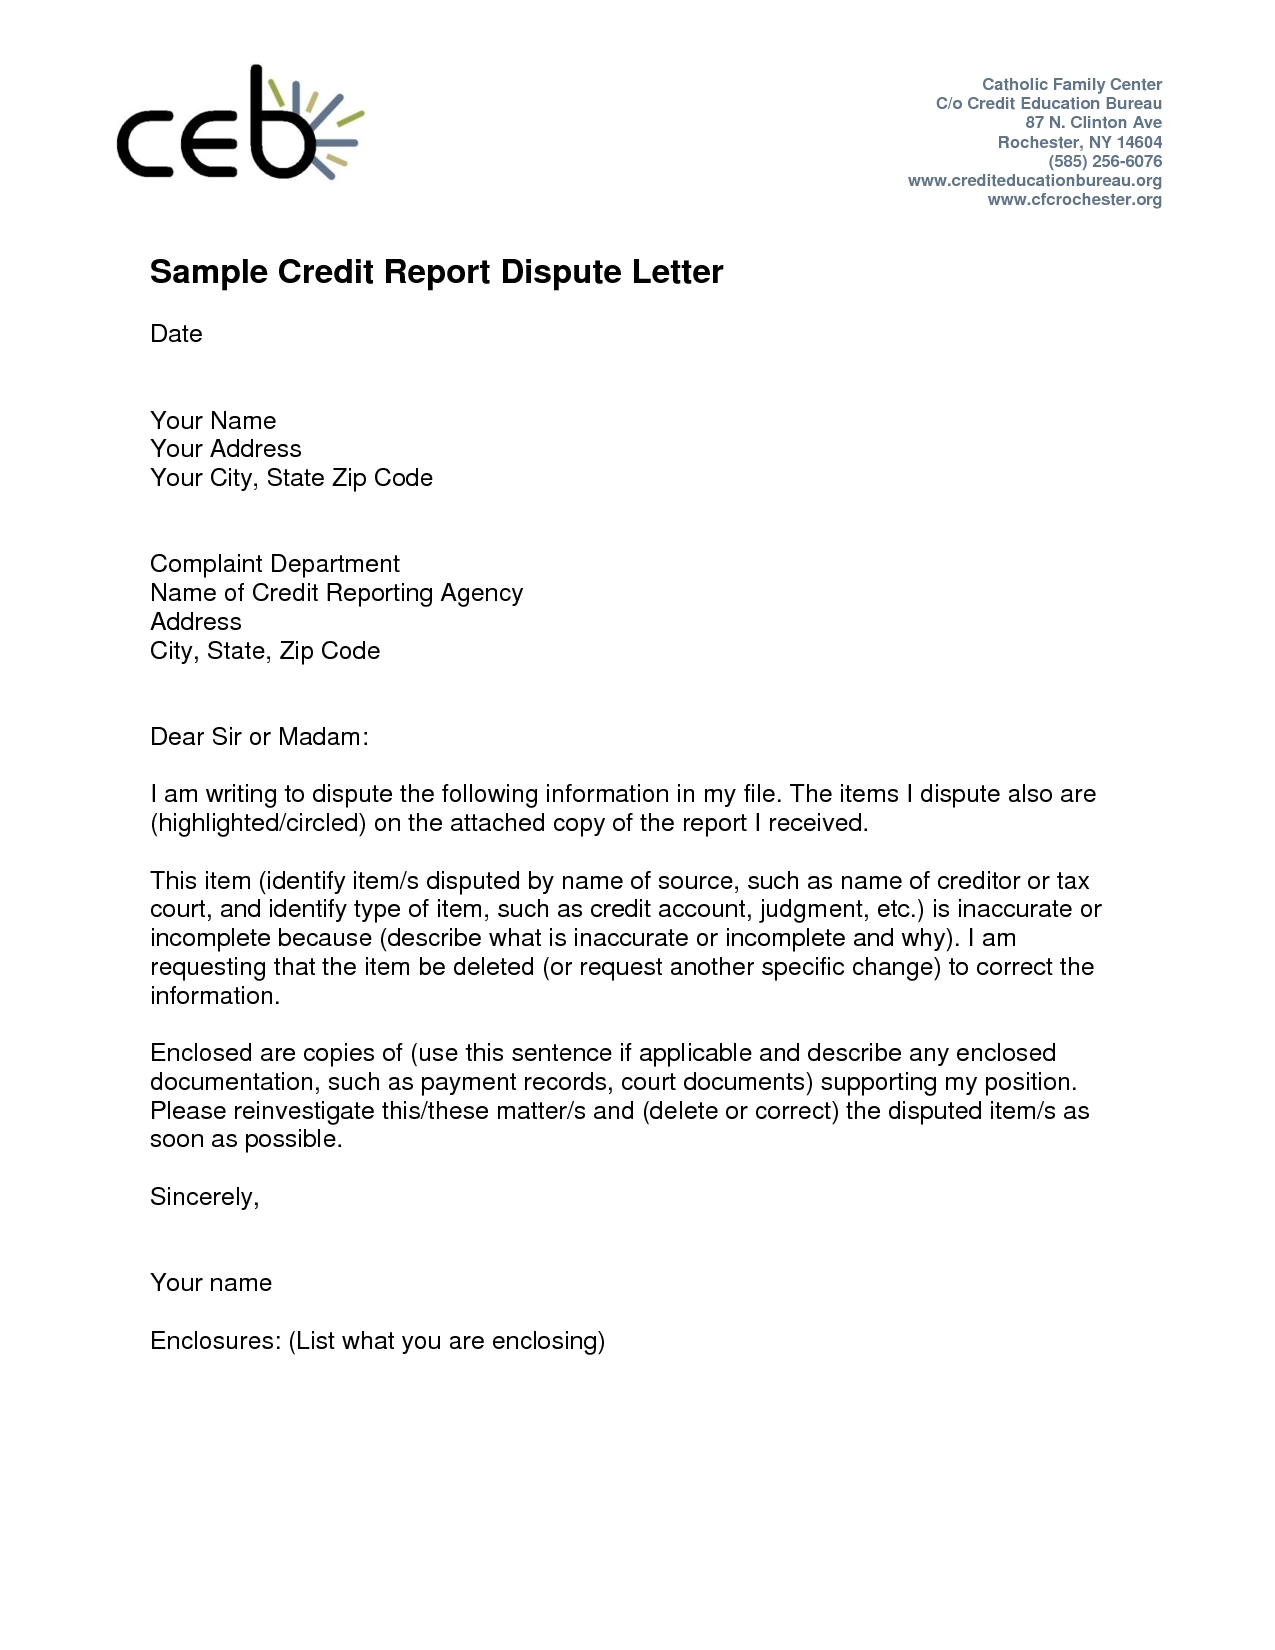 609 Dispute Letter to Credit Bureau Template - Credit Dispute Letter Templates Acurnamedia